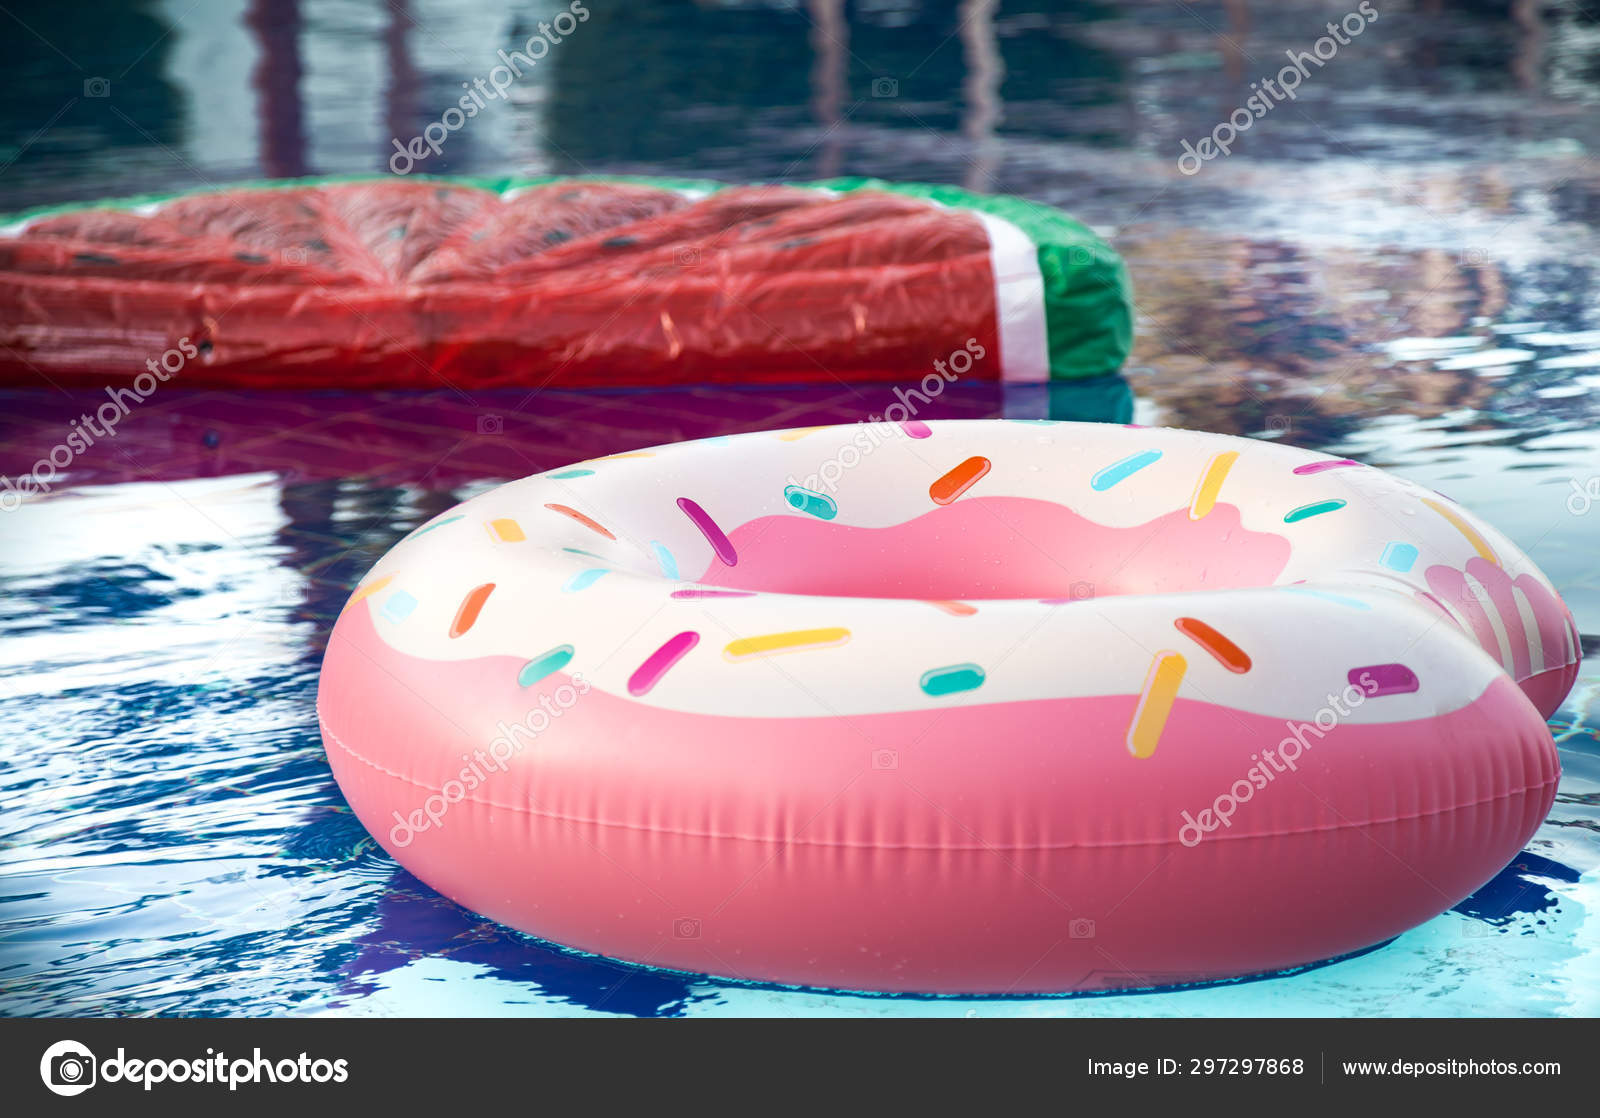 Sense of guilt bush Awaken Acessórios infláveis para nadar na piscina fotos, imagens de © puhimec  #297297868